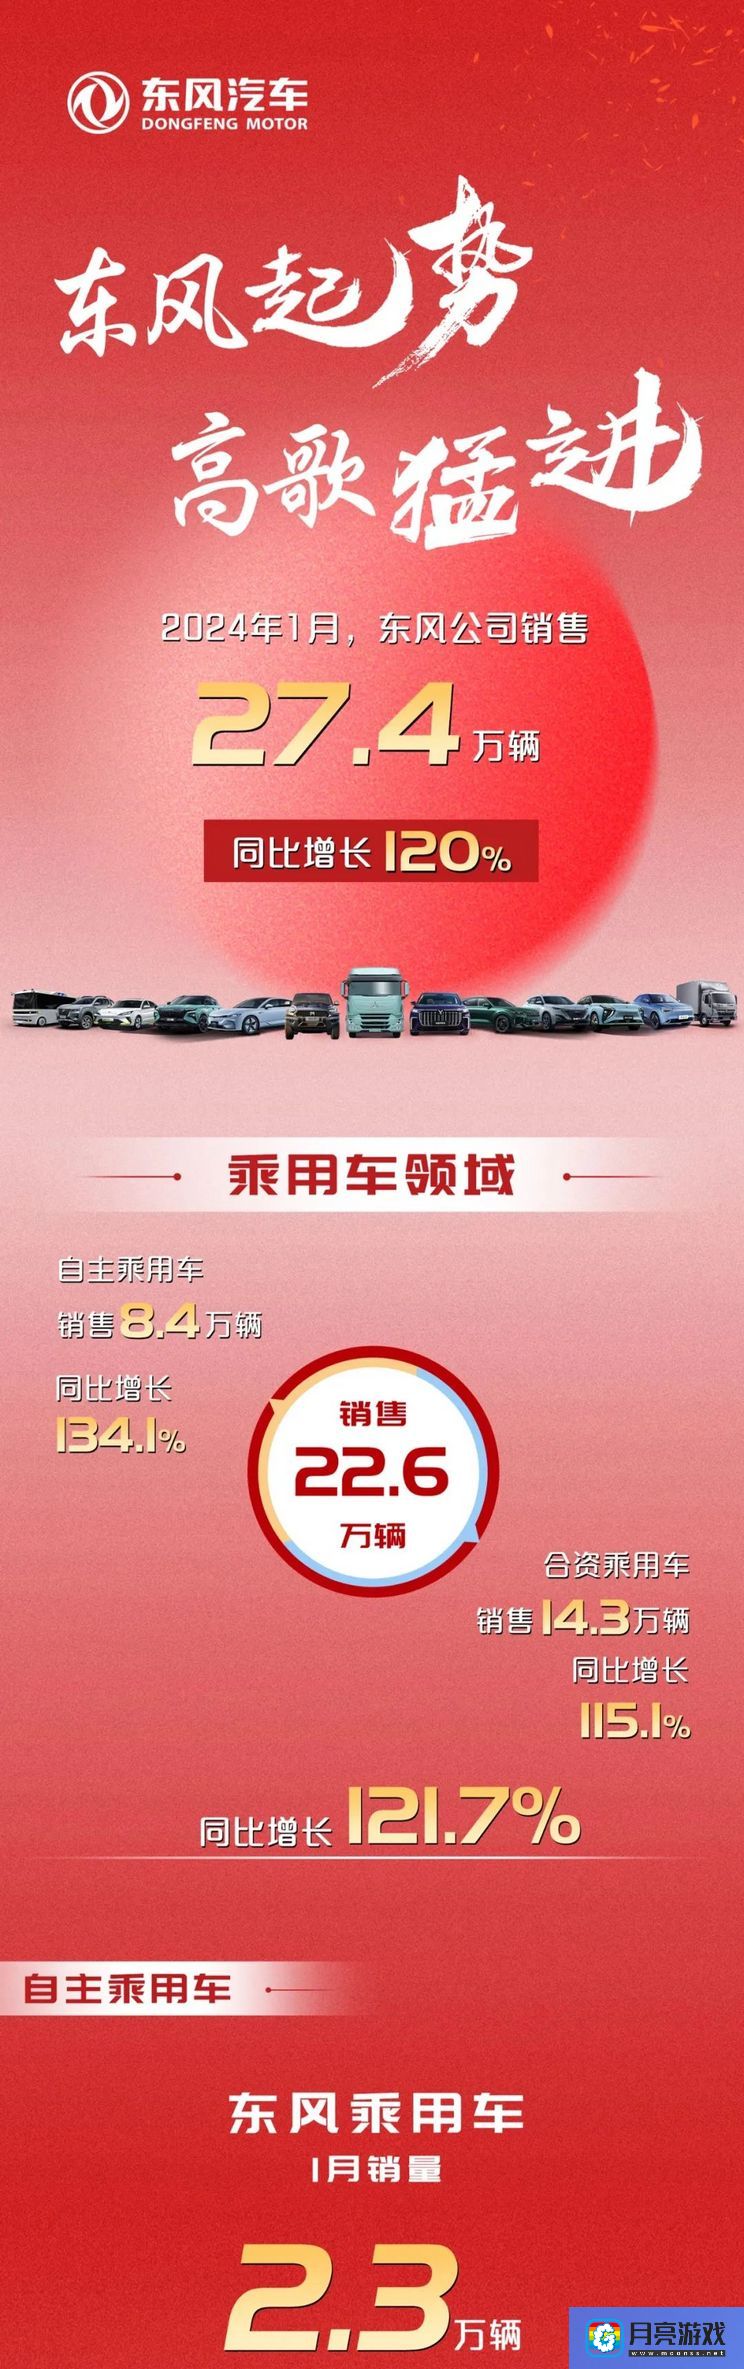 汽车-开门红 东风公司1月销量同比增长120%-专题资讯